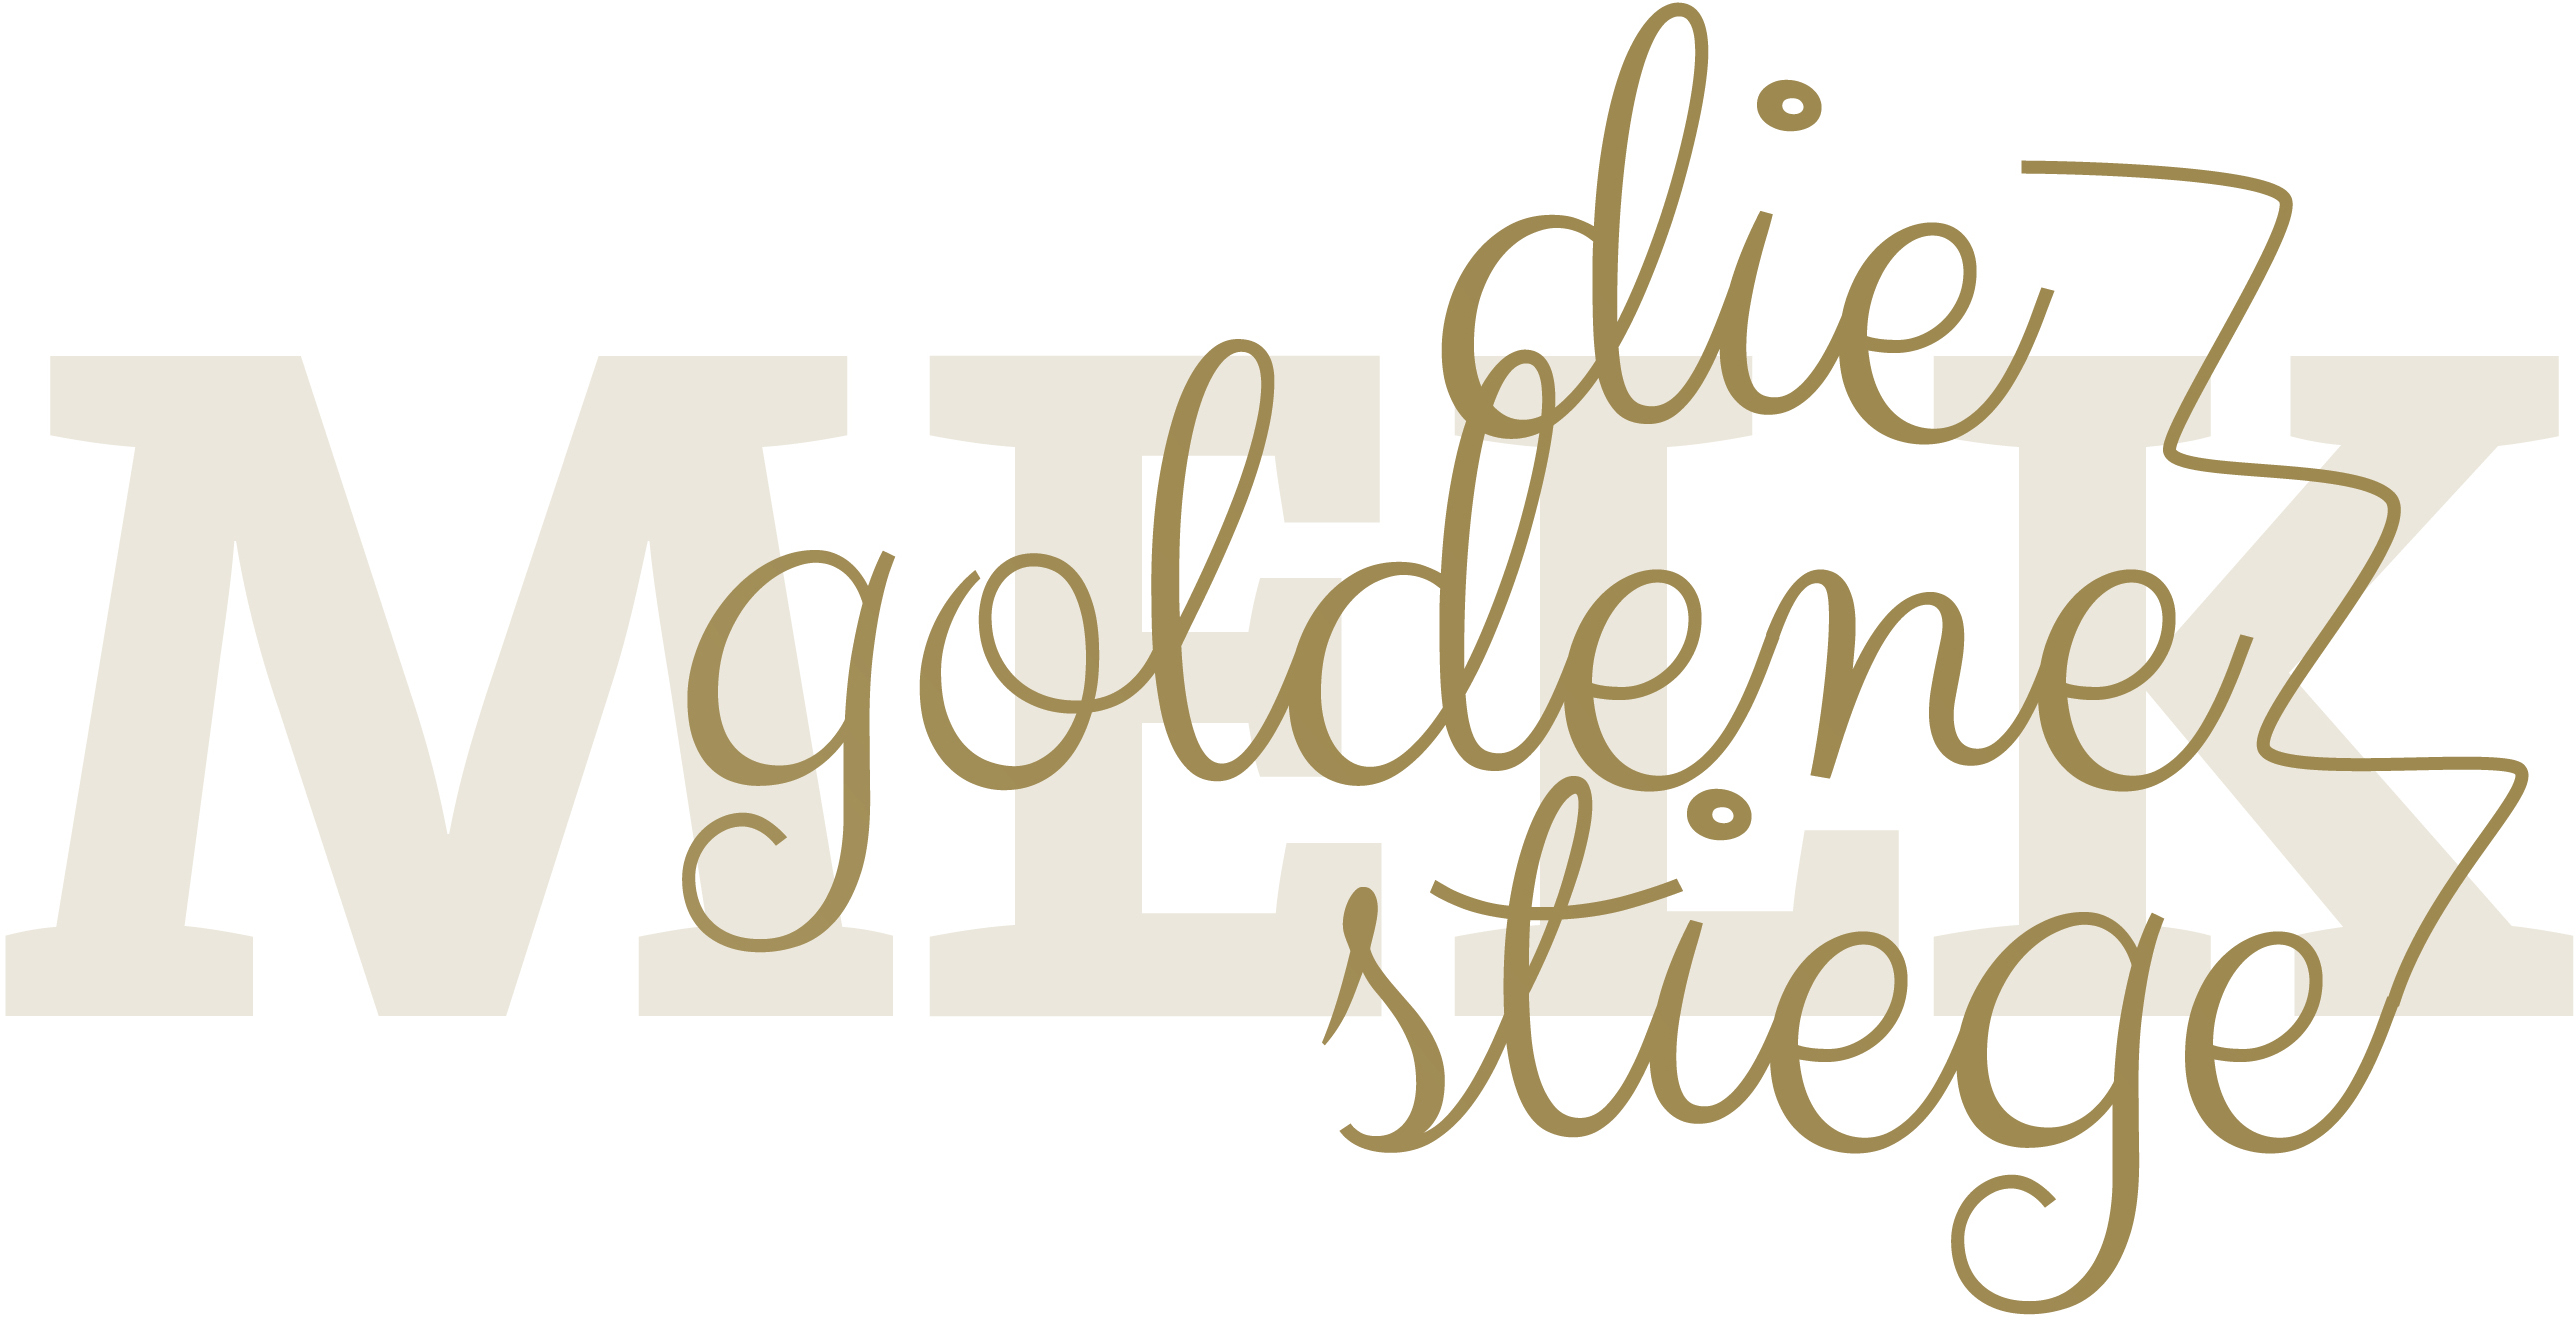 Das Logo der goldenen Stiege